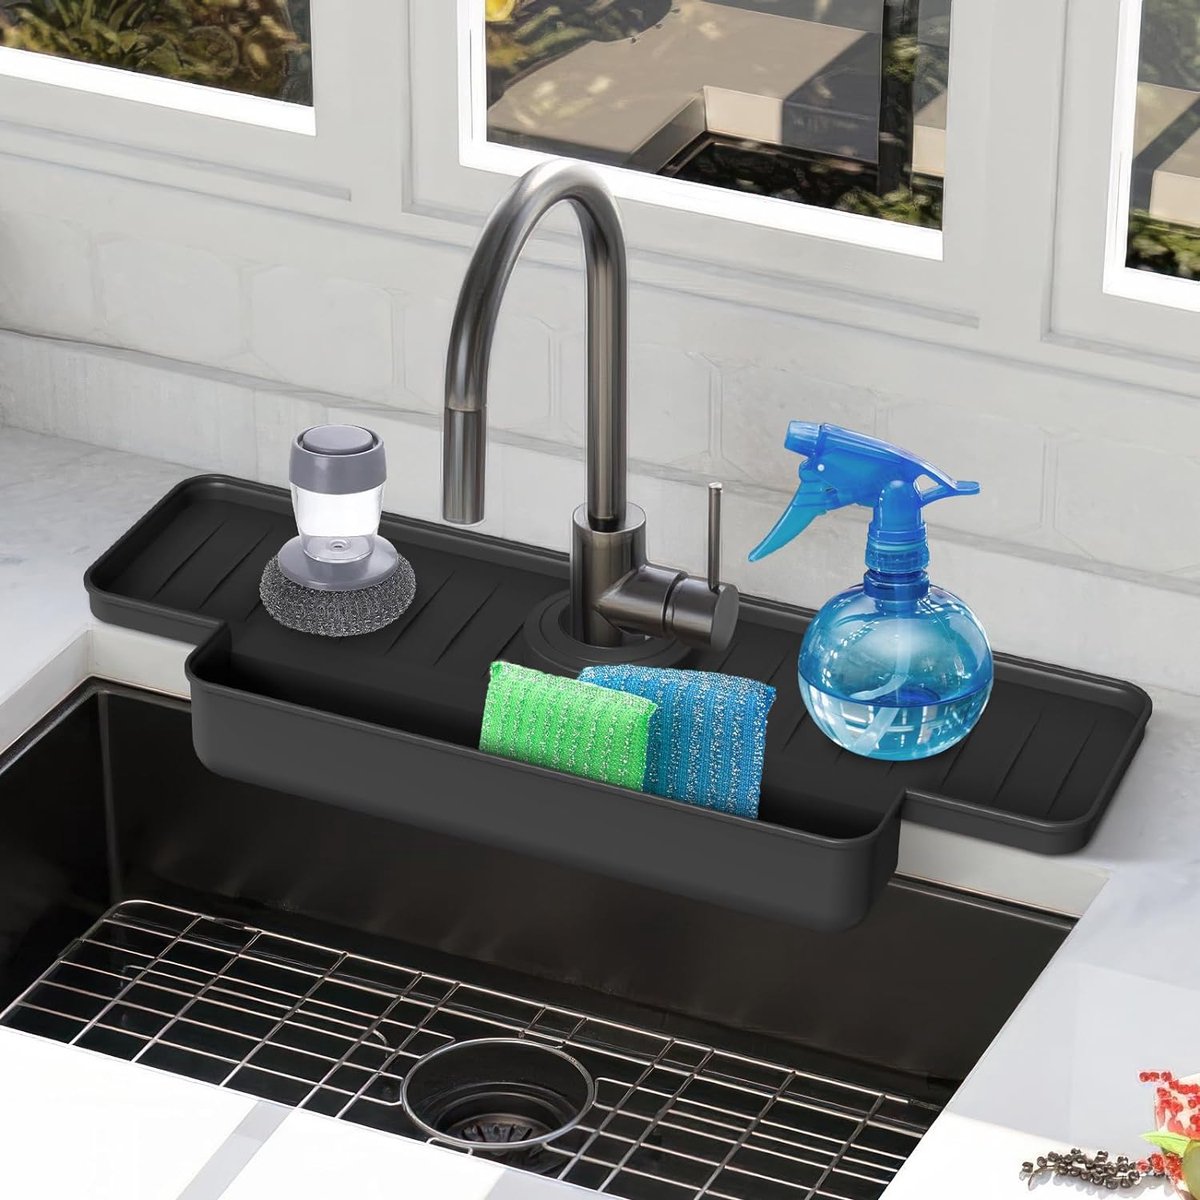 Siliconen kraanmat bescherming van het werkblad voor badkamer en keuken (zwart) met wateropvangfunctie